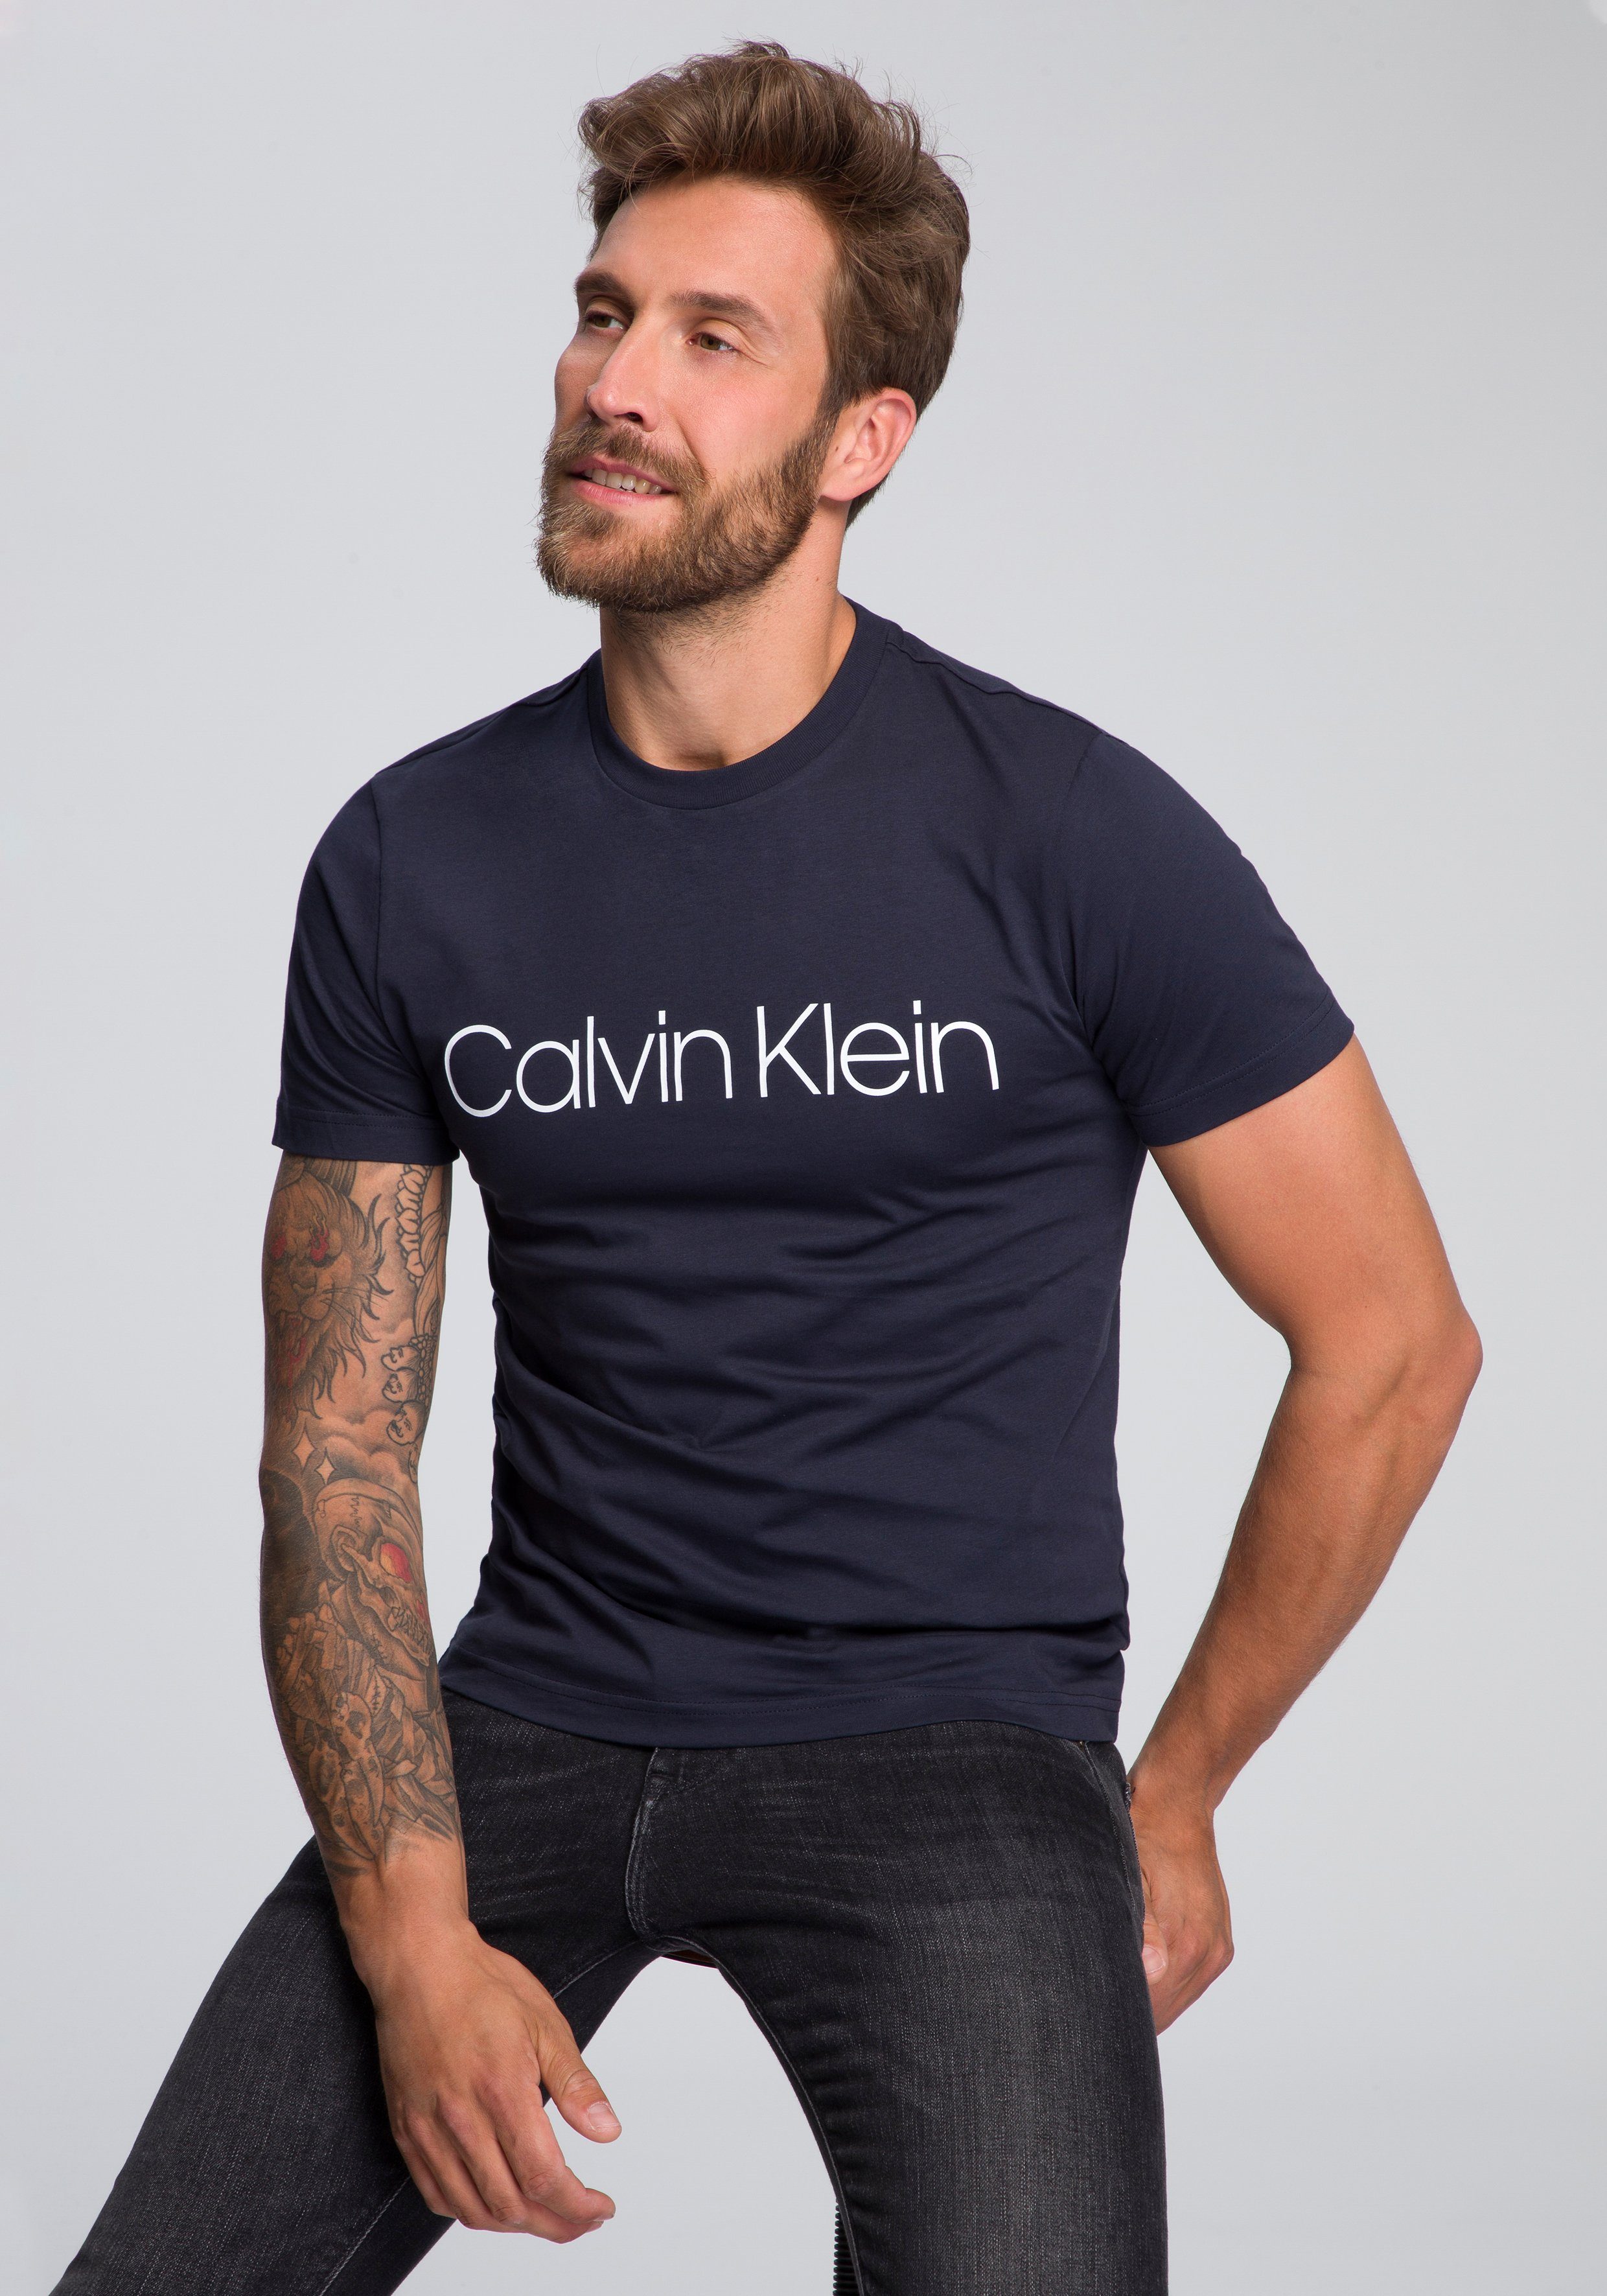 Calvin Klein T-Shirt COTTON FRONT LOGO mit großem Calvin Klein- Schriftzug